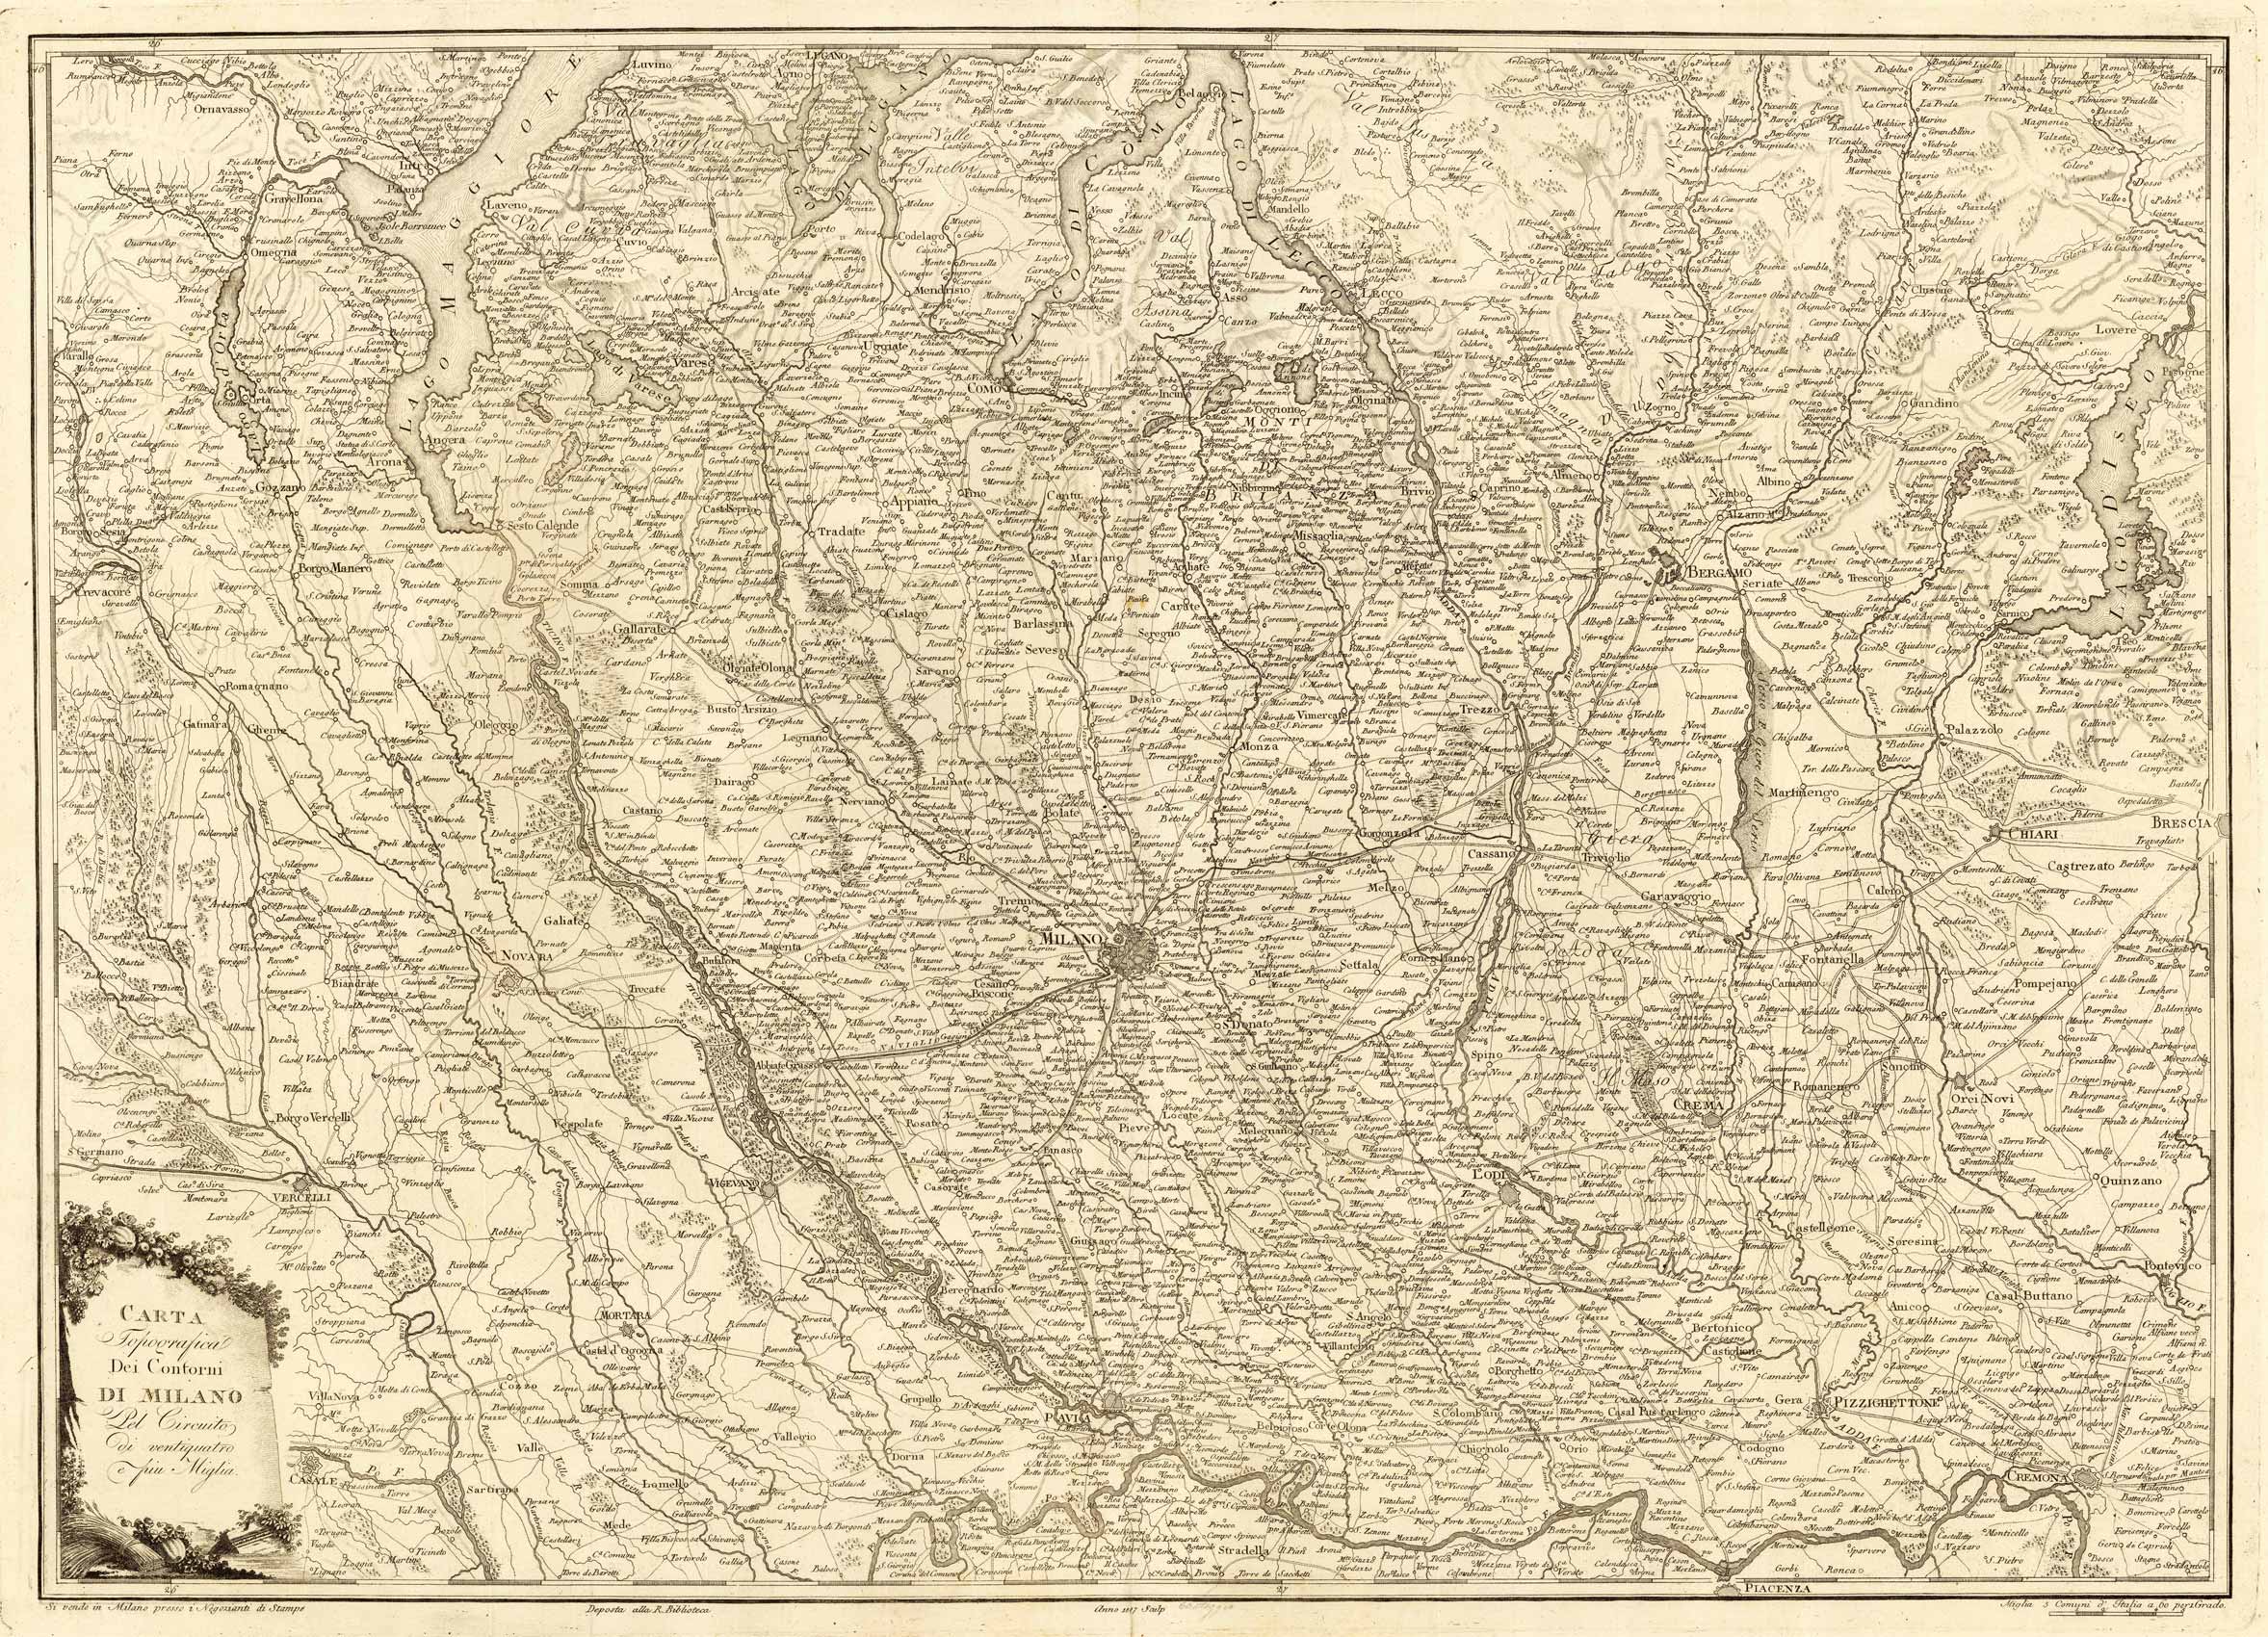 Carta Topografica Dei Contorni Di Milano del Gircuito di ventiquatro piu  Miglia. Si vende in Milano presso i negozianti di Stampe by [Anonymous]:  (1807) Map